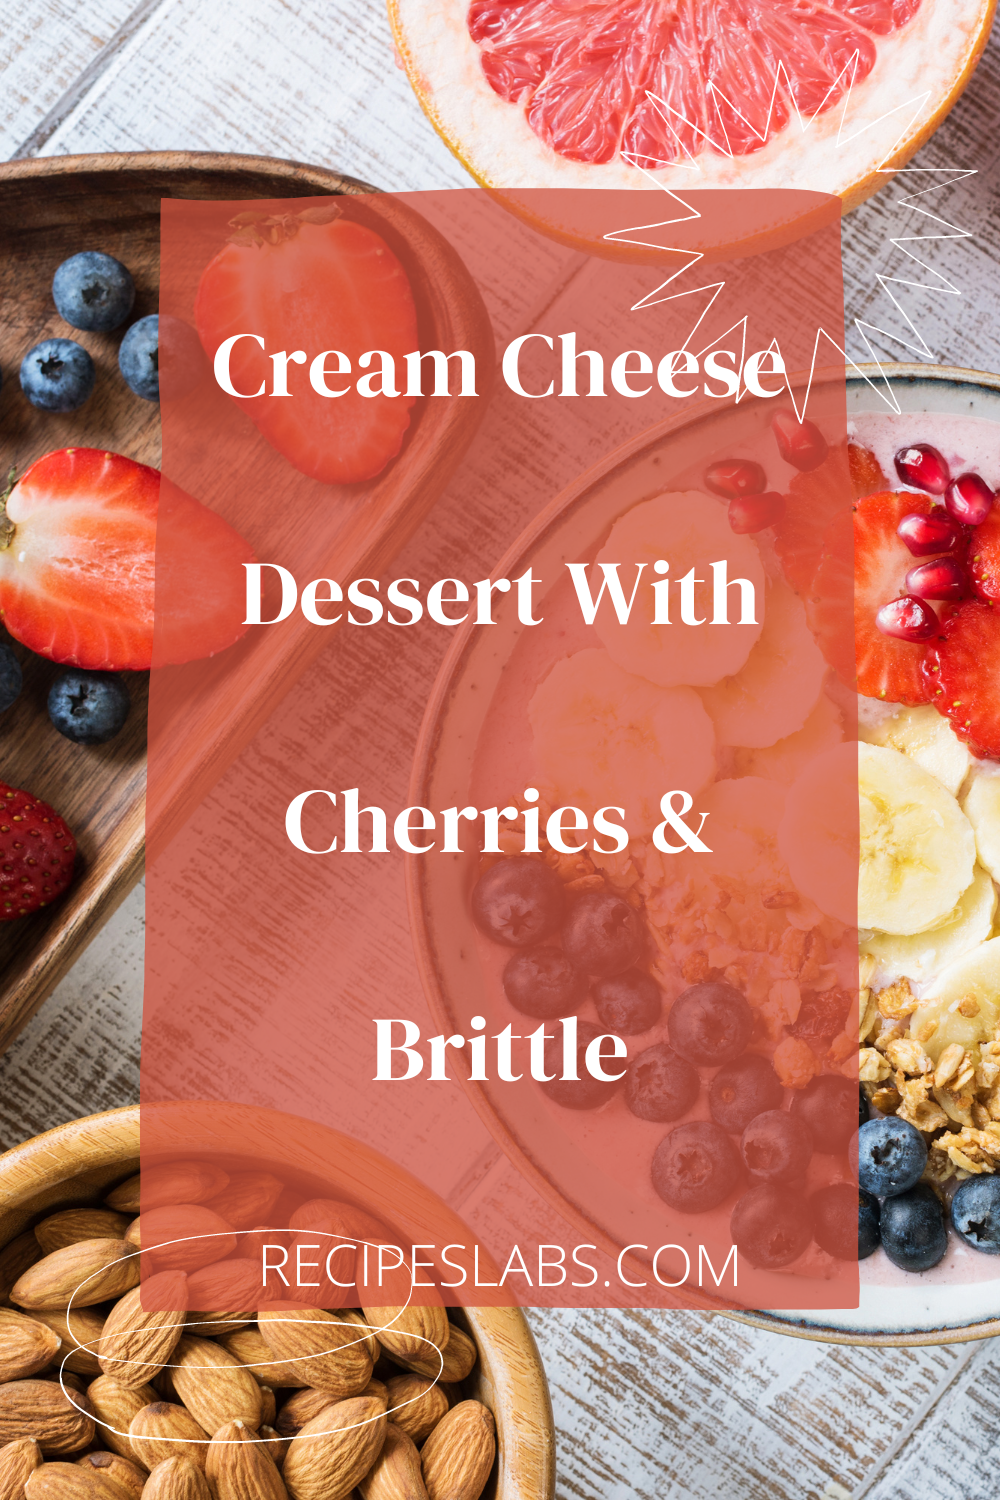 Cream Cheese Dessert With Cherries & Brittle